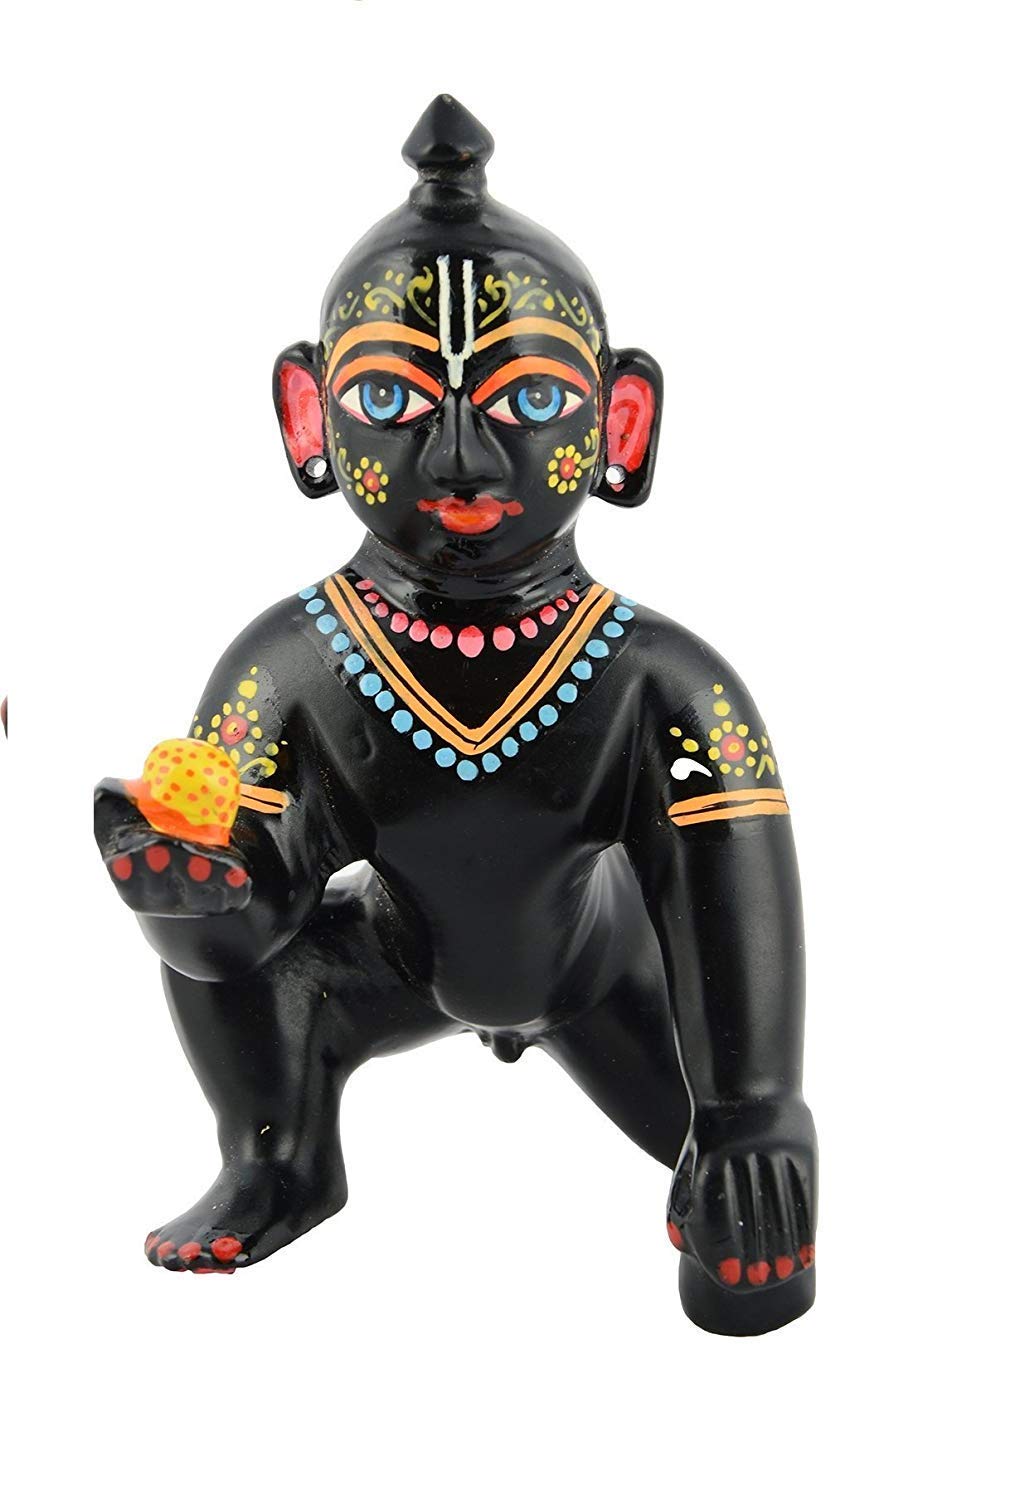 काले रंग में पीतल के लड्डू गोपाल की मूर्ति/बेबी कृष्ण बाल गोपाल मूर्ति आकार 1 संख्या (7 सेमी)